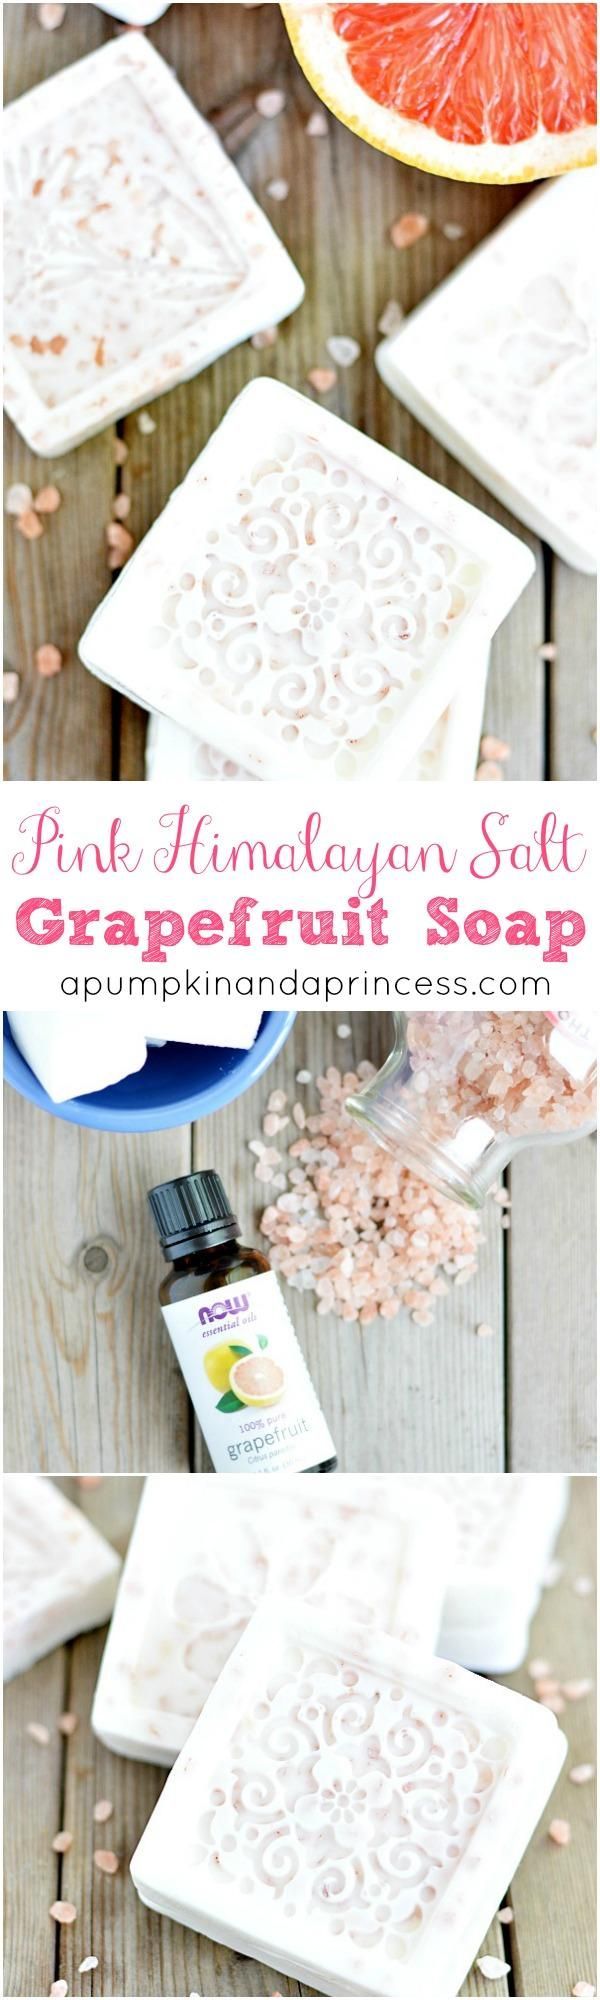 Himalayan Salt Grapefruit Soap Recipe